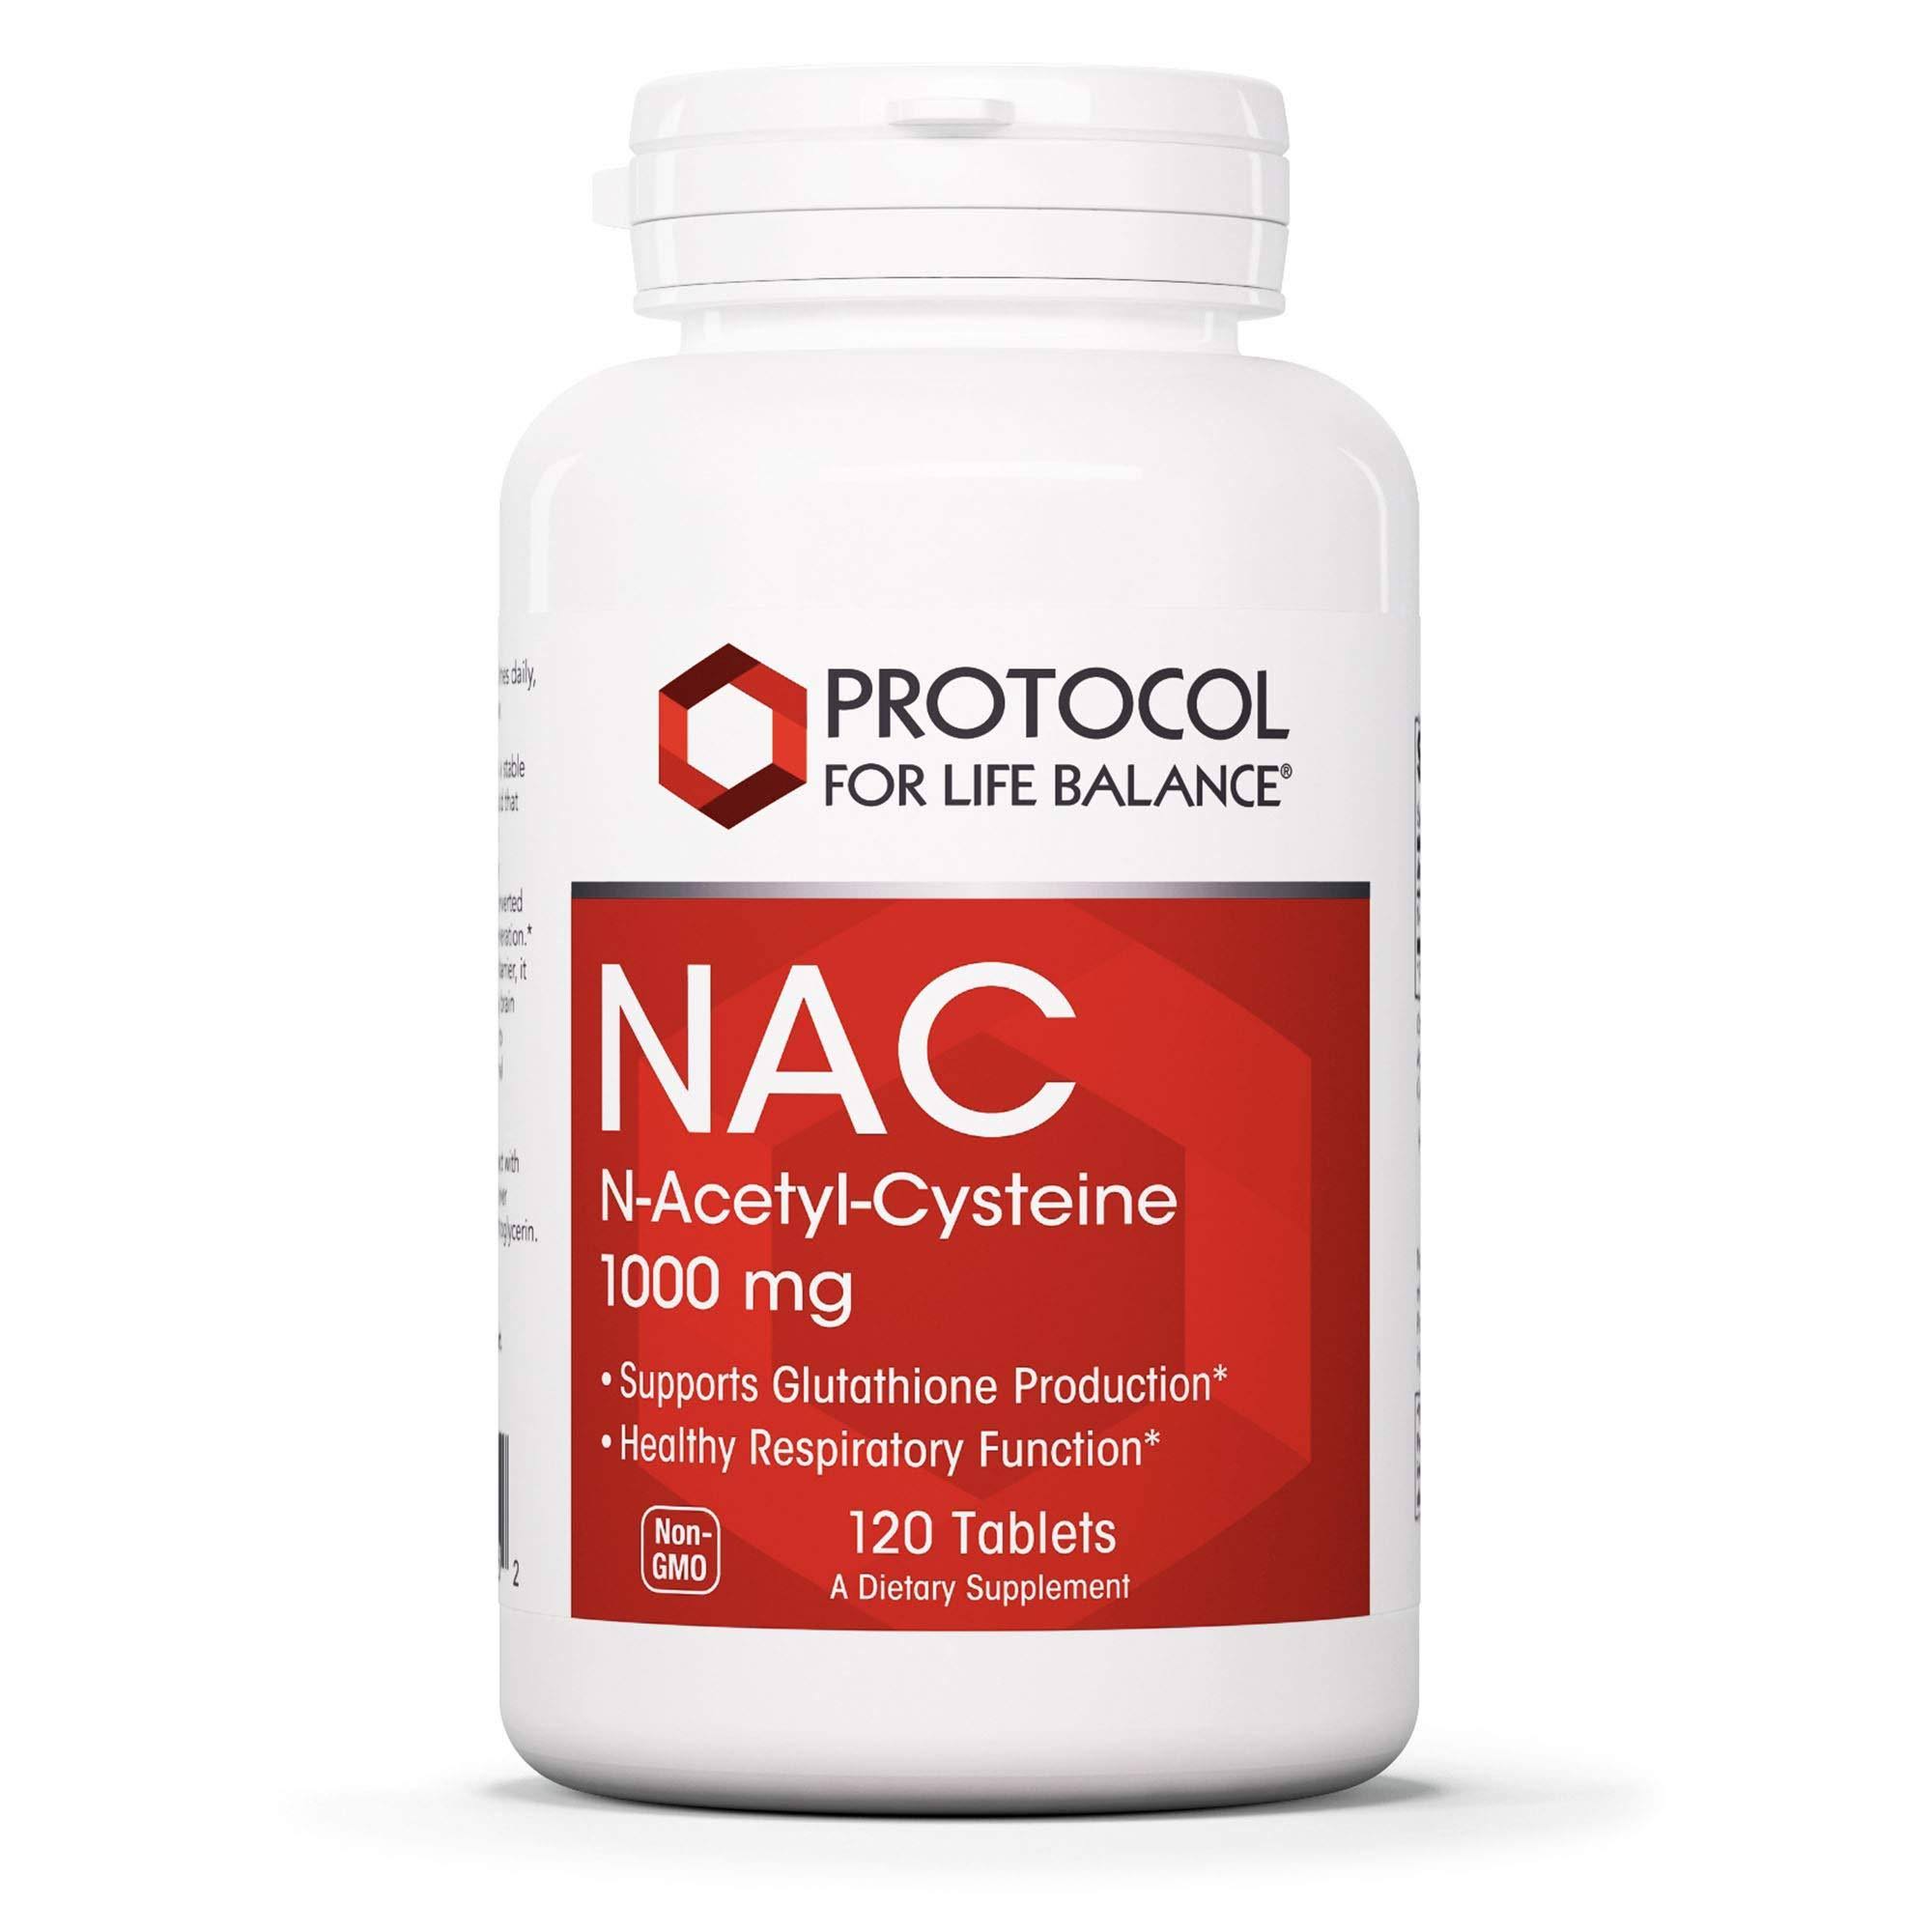 Protocol for Life Balance NAC - 1,000 mg - 120 Tablets